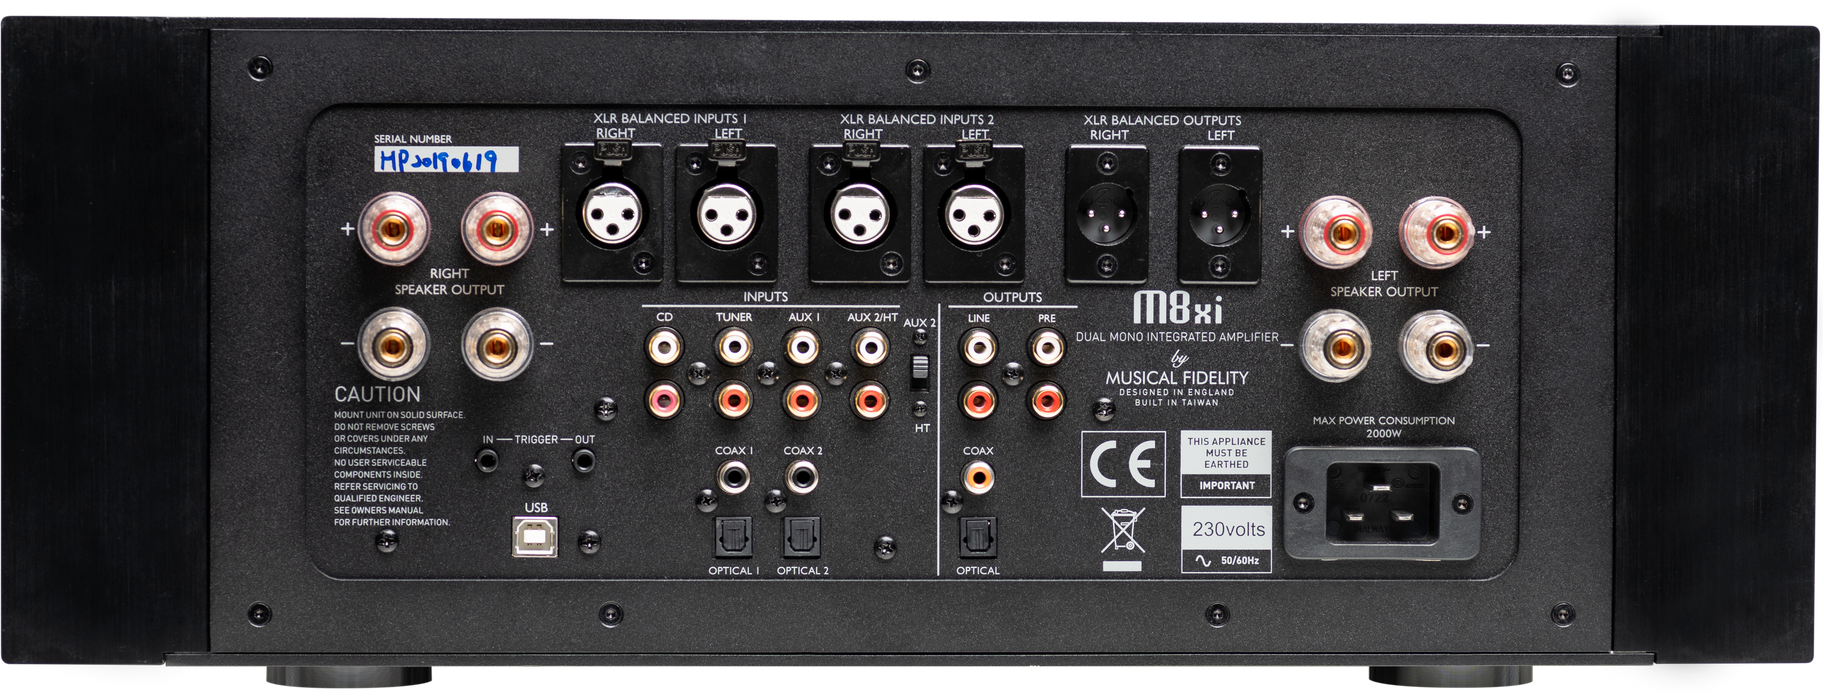 Musical Fidelity M8xi - Amplificateur stéréo intégré 550Watts/canal